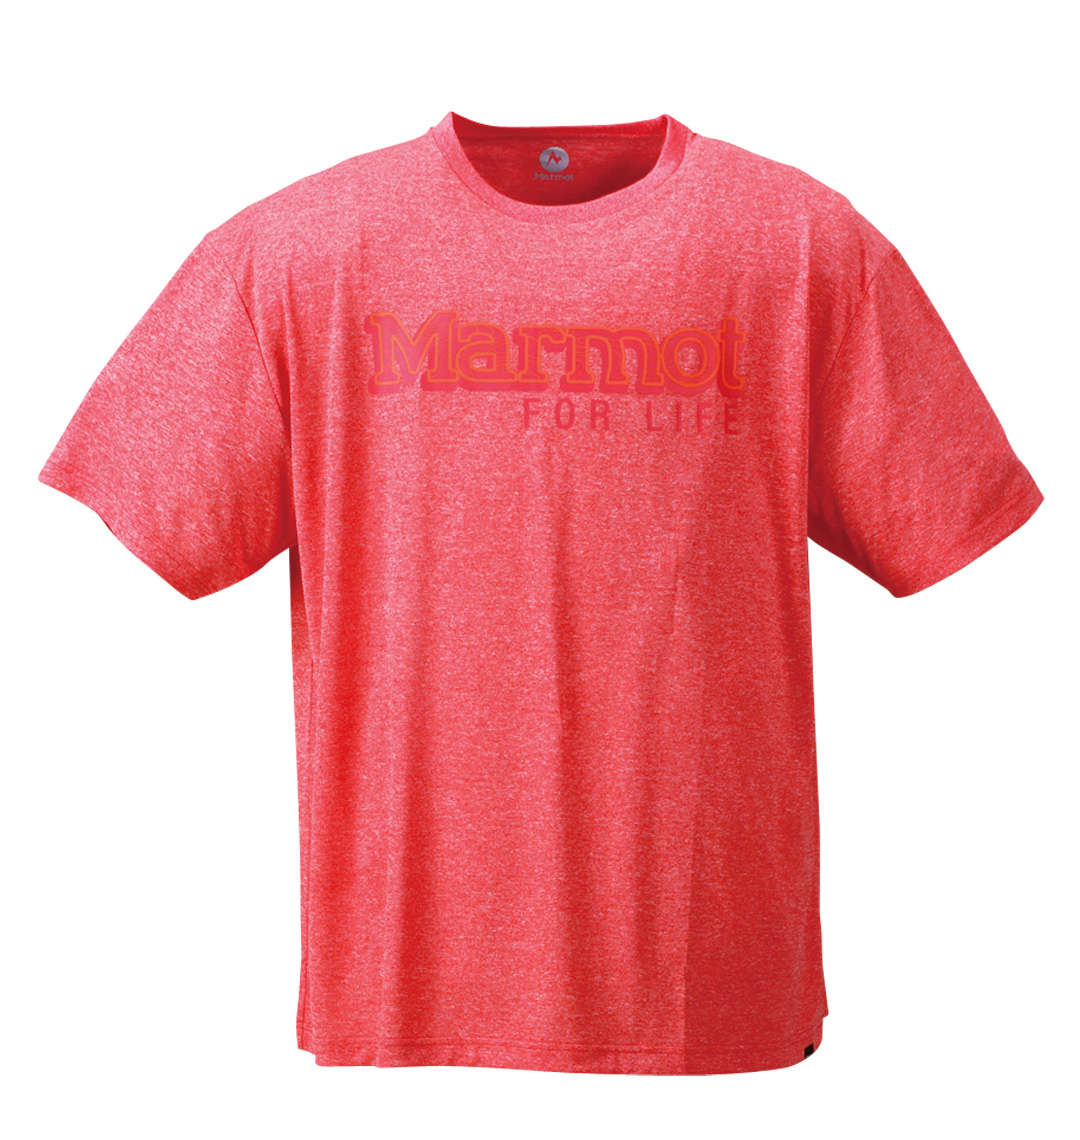 大きいサイズ メンズ Marmot (マーモット) ヘザーマーモットロゴ半袖Tシャツ 